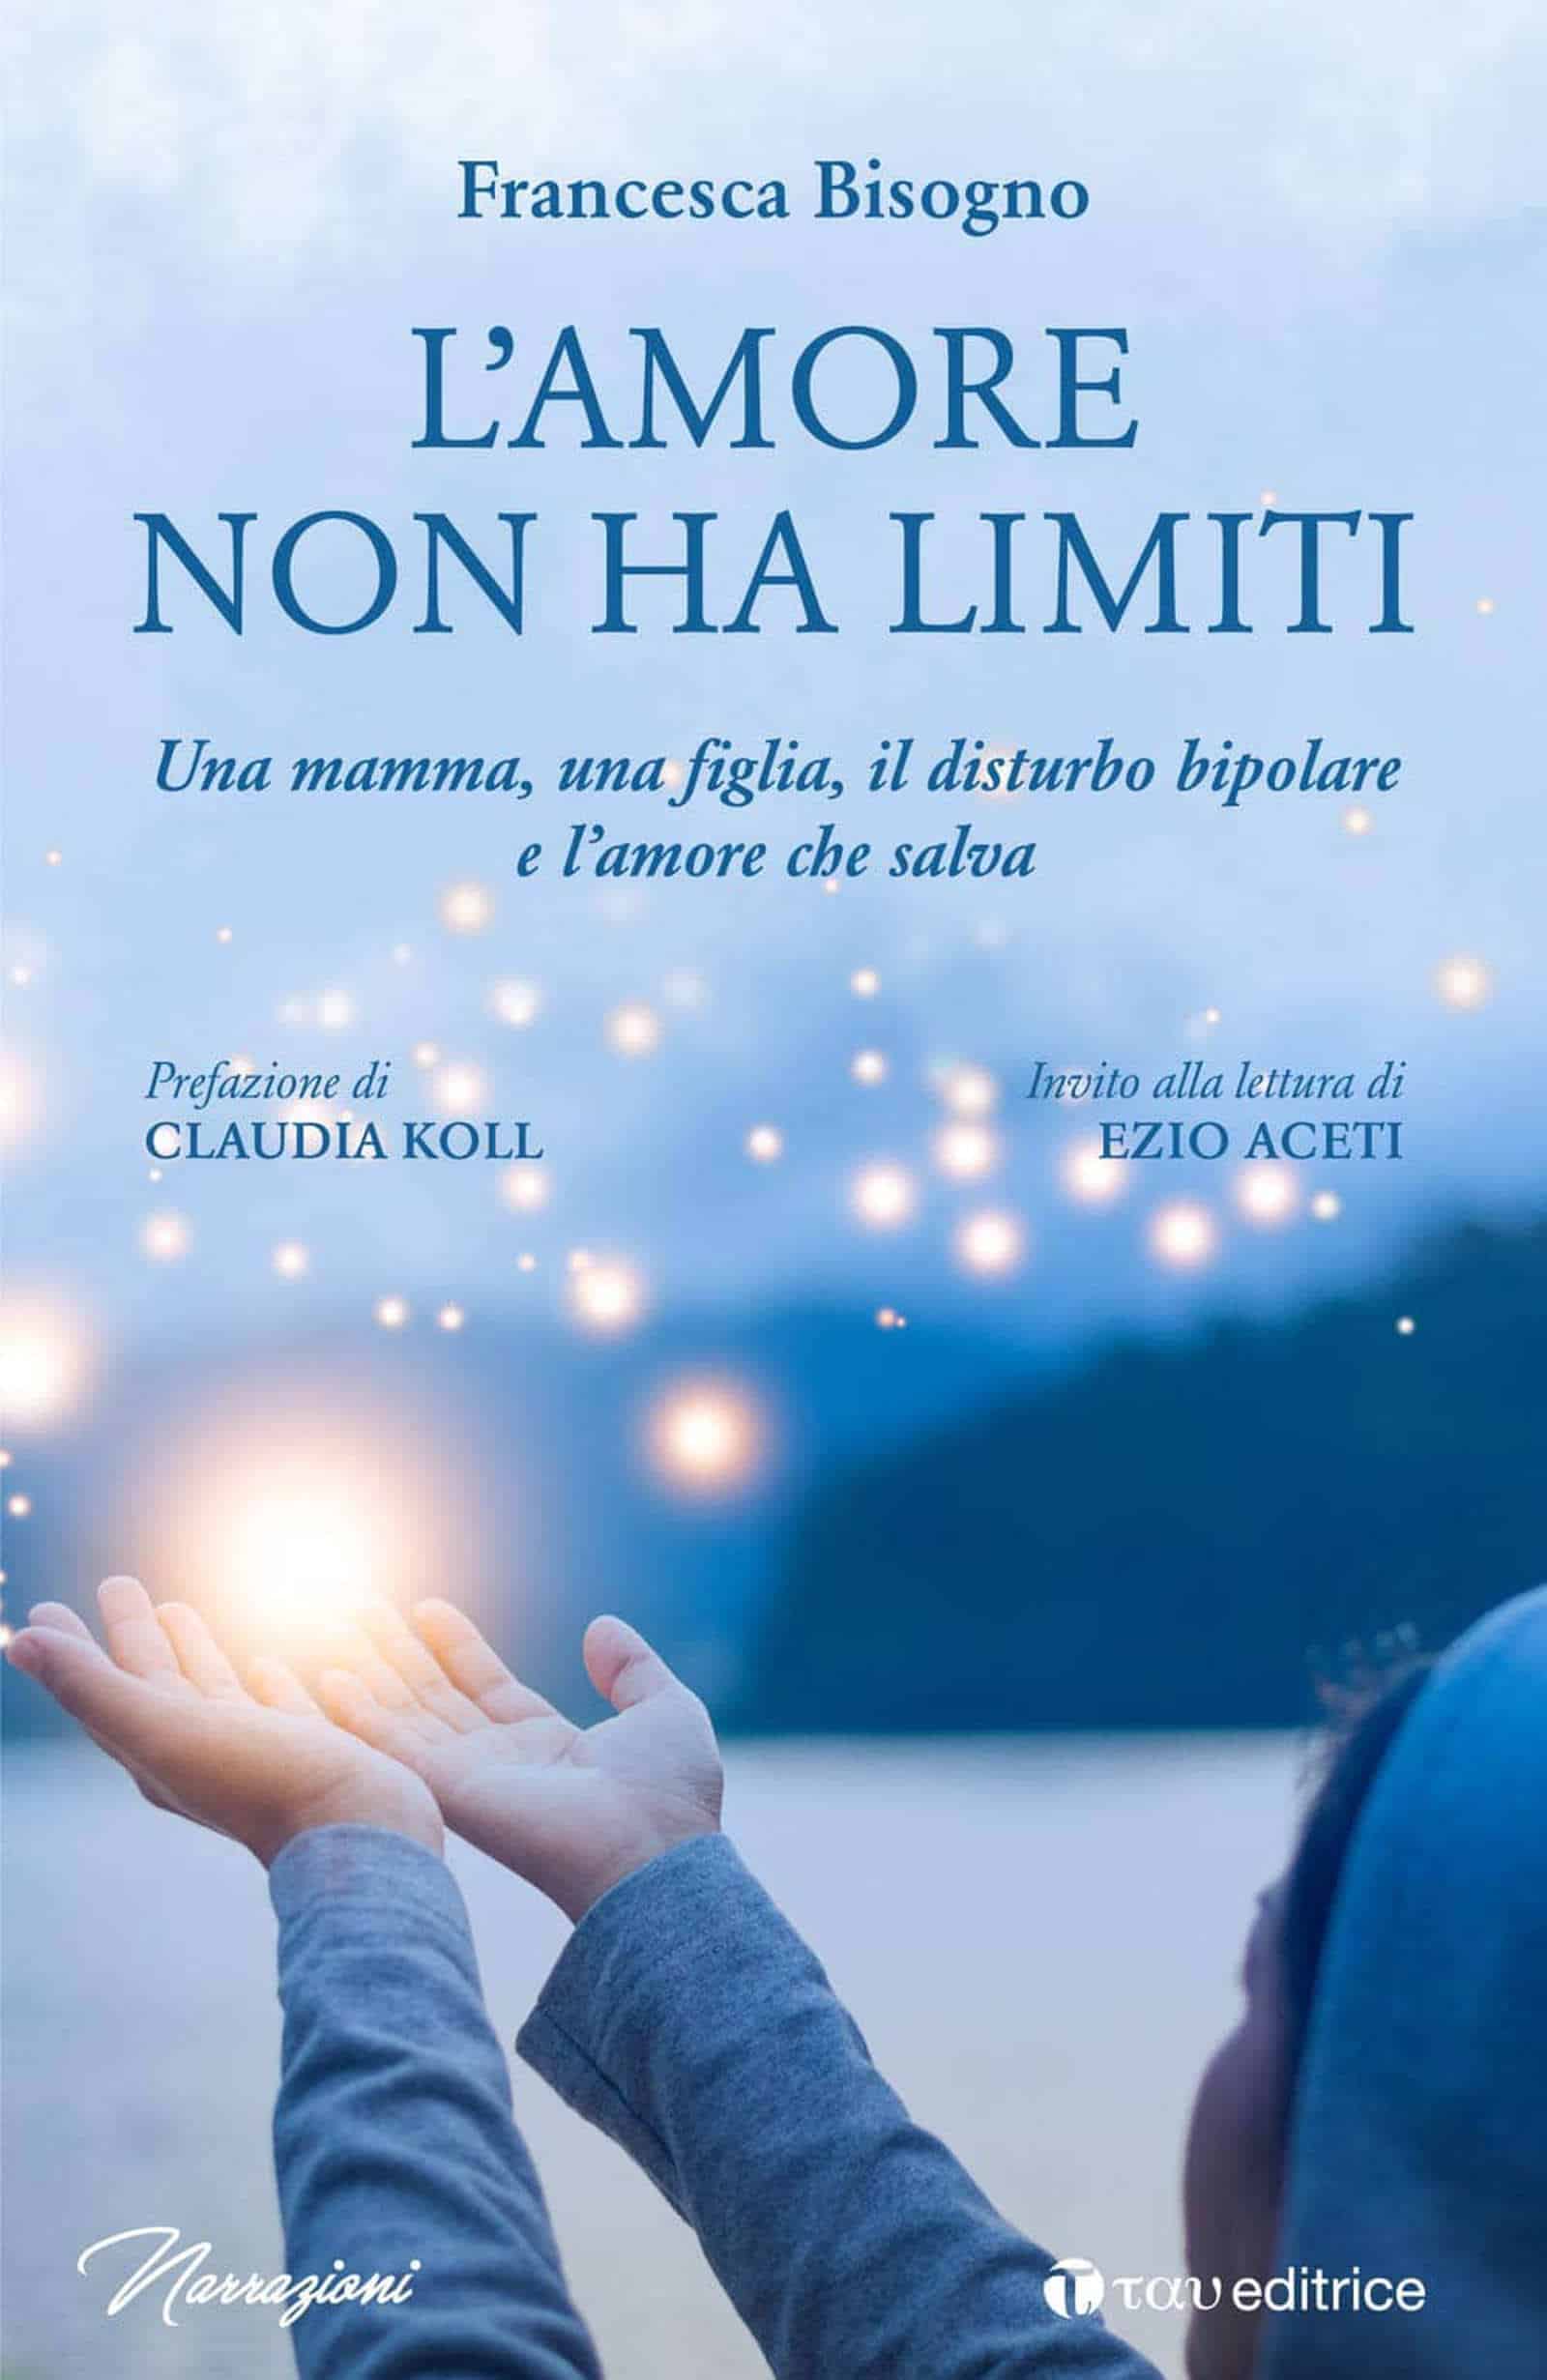 L'amore non ha limiti (2021) di Francesca Bisogno - Recensione del libro